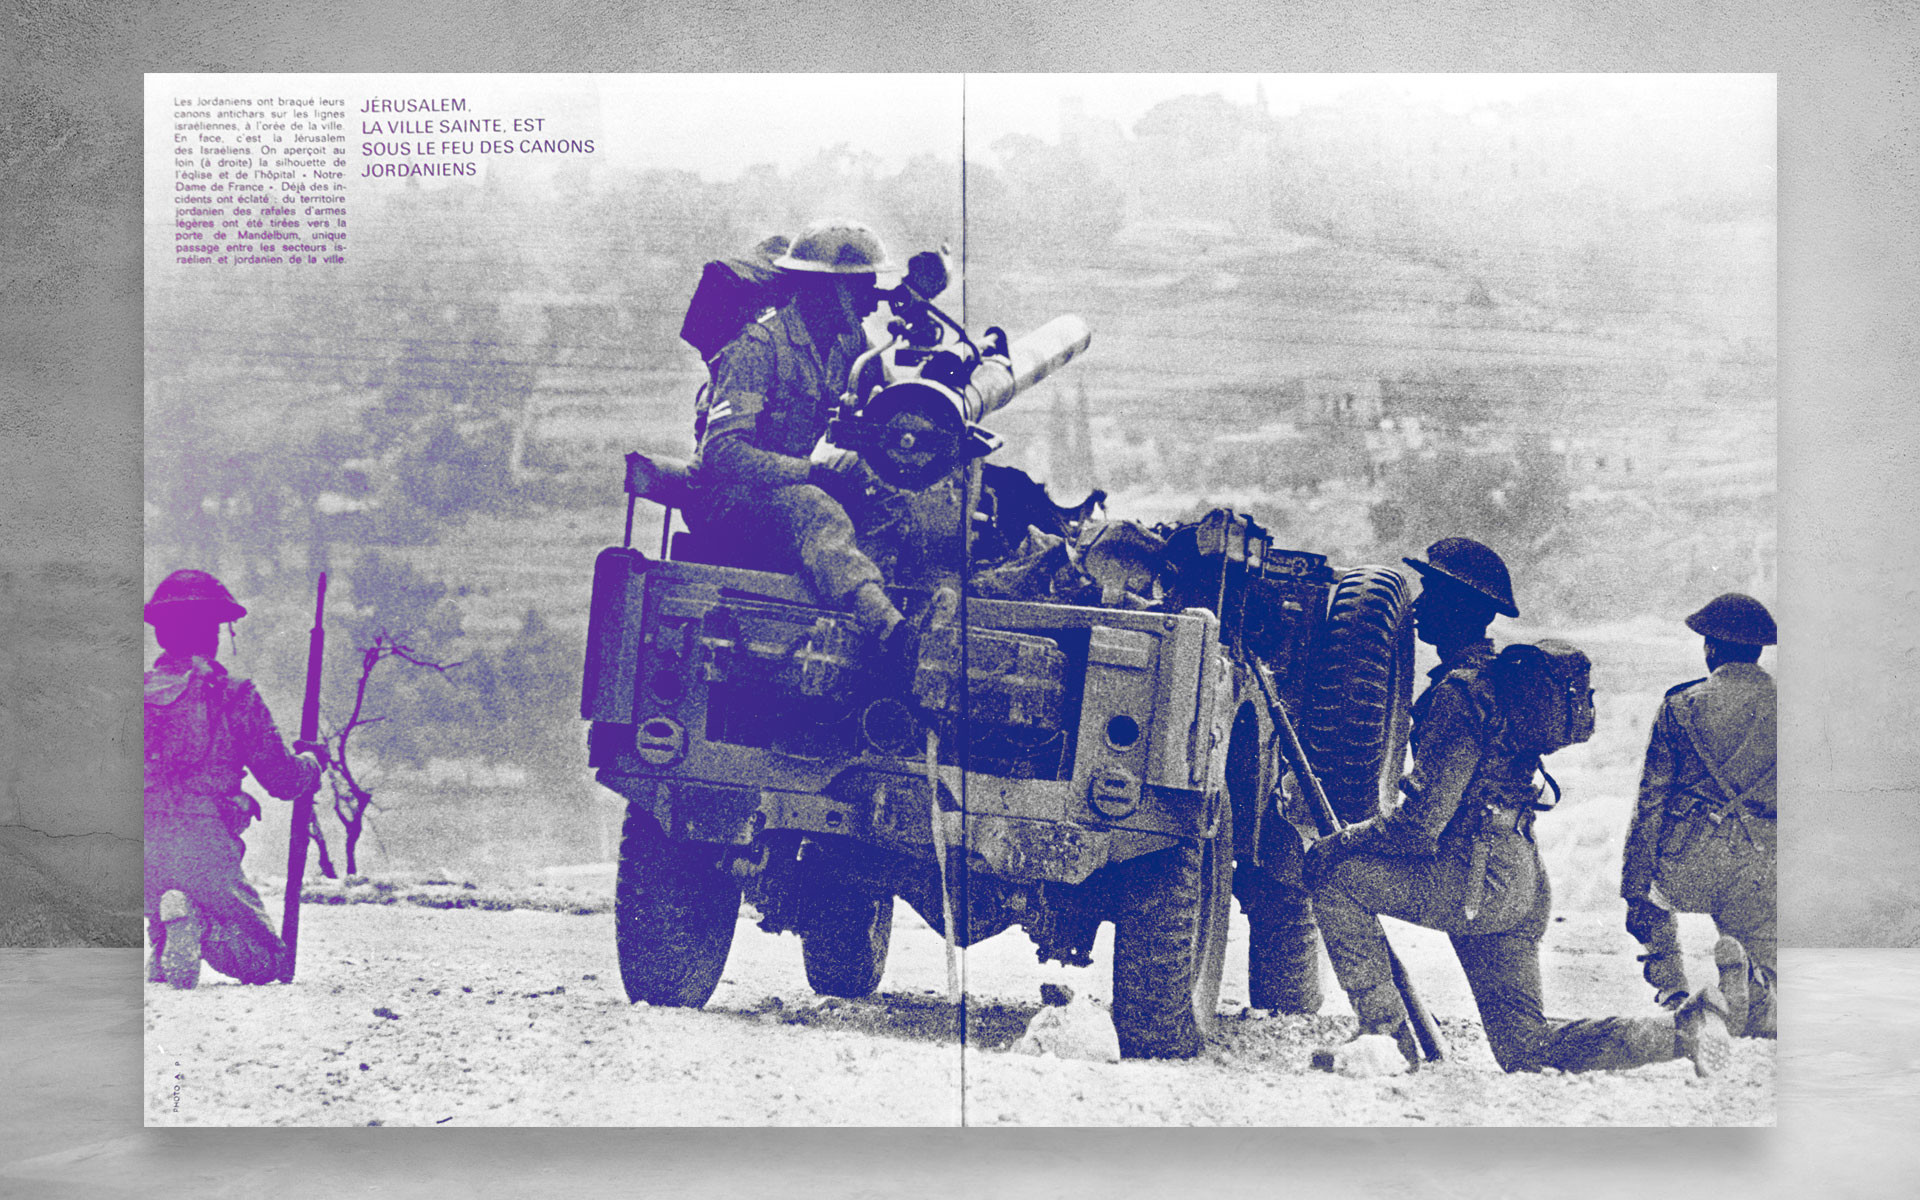 Иорданские артиллеристы отступают из Иерусалима. Репродукция снимка из еженедельника "За рубежом". Шестидневная война. Израиль, 1967 год. Коллаж © L!FE Фото: © РИА Новости